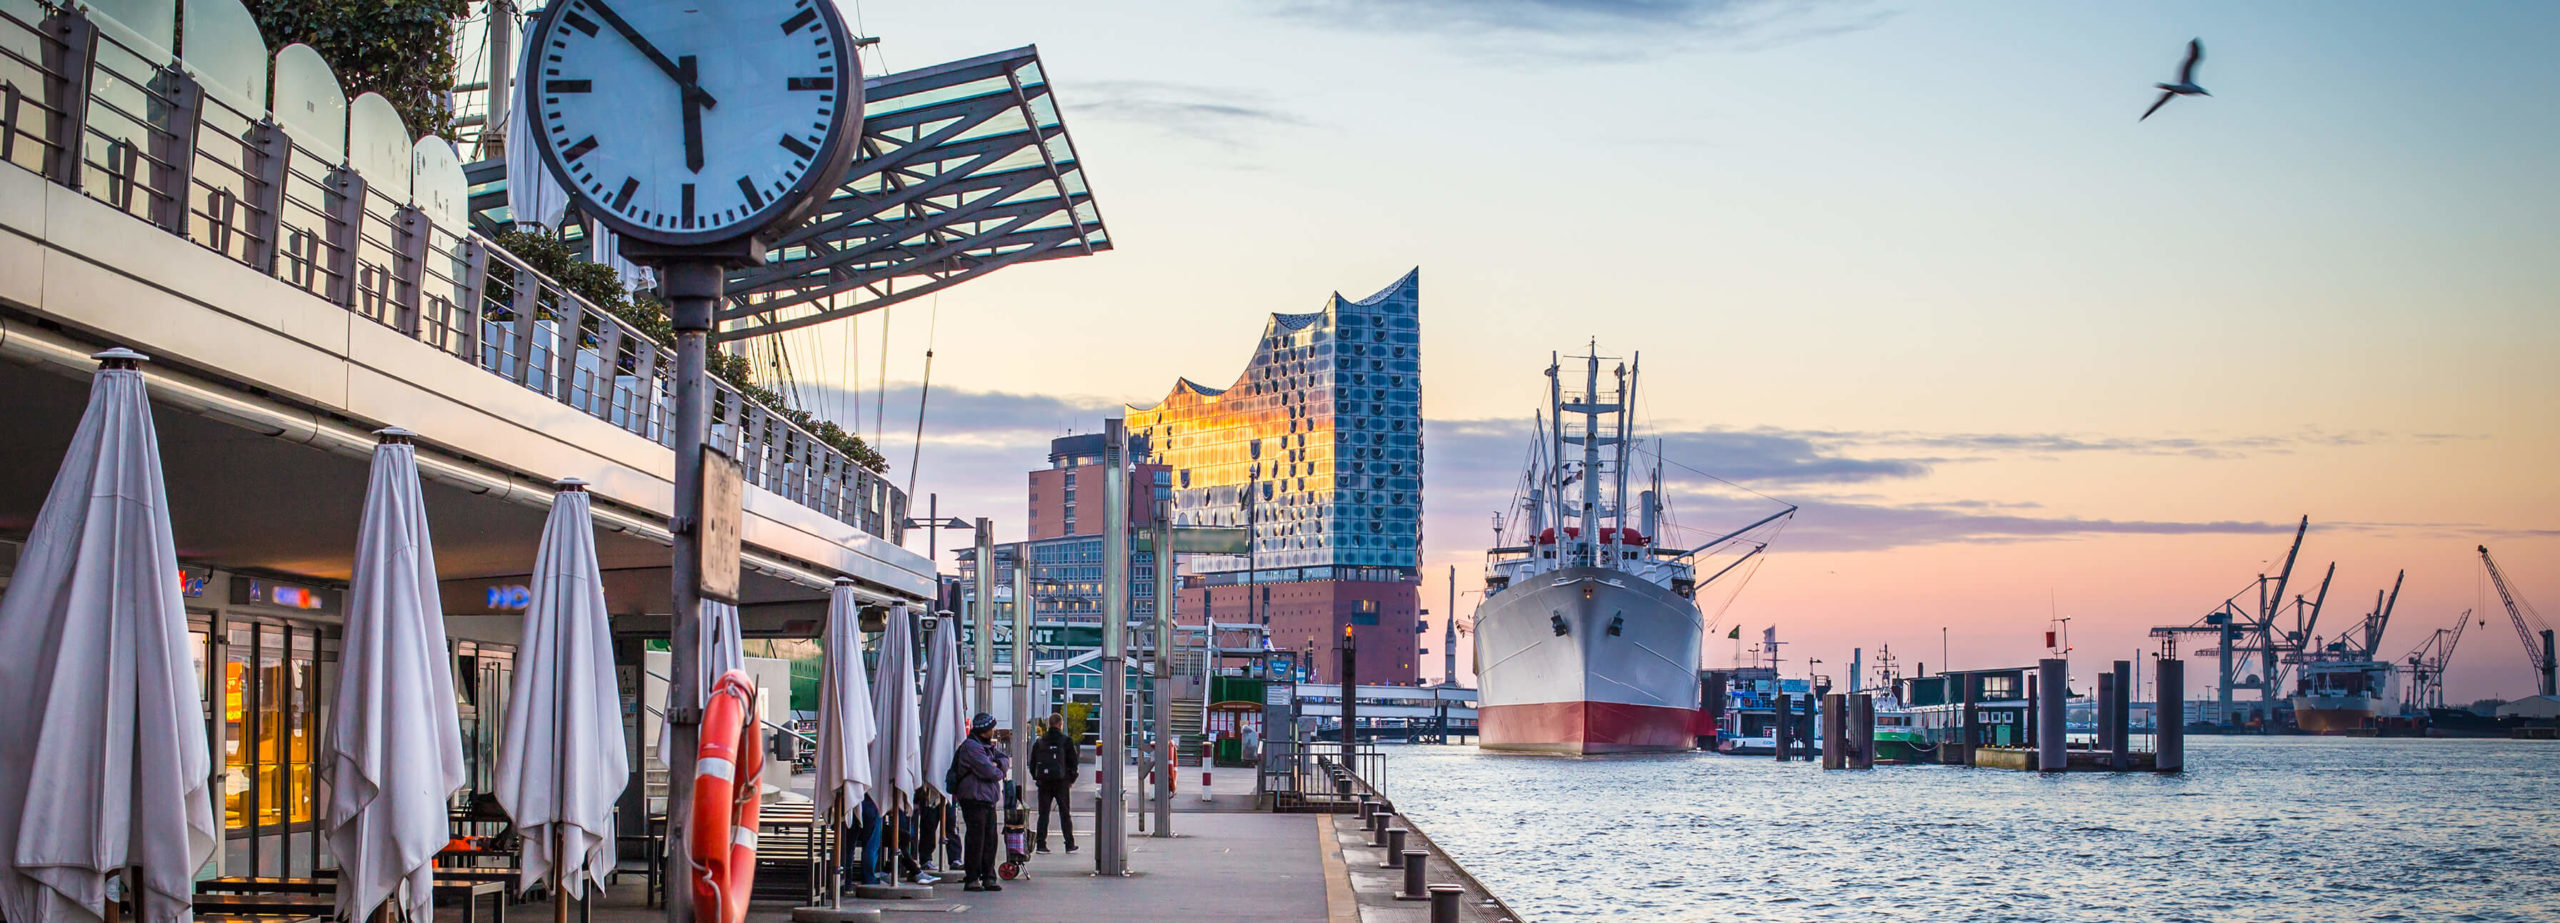 Hafenwirtschaft Hamburg | Fischrestaurant an den Landungsbrücken